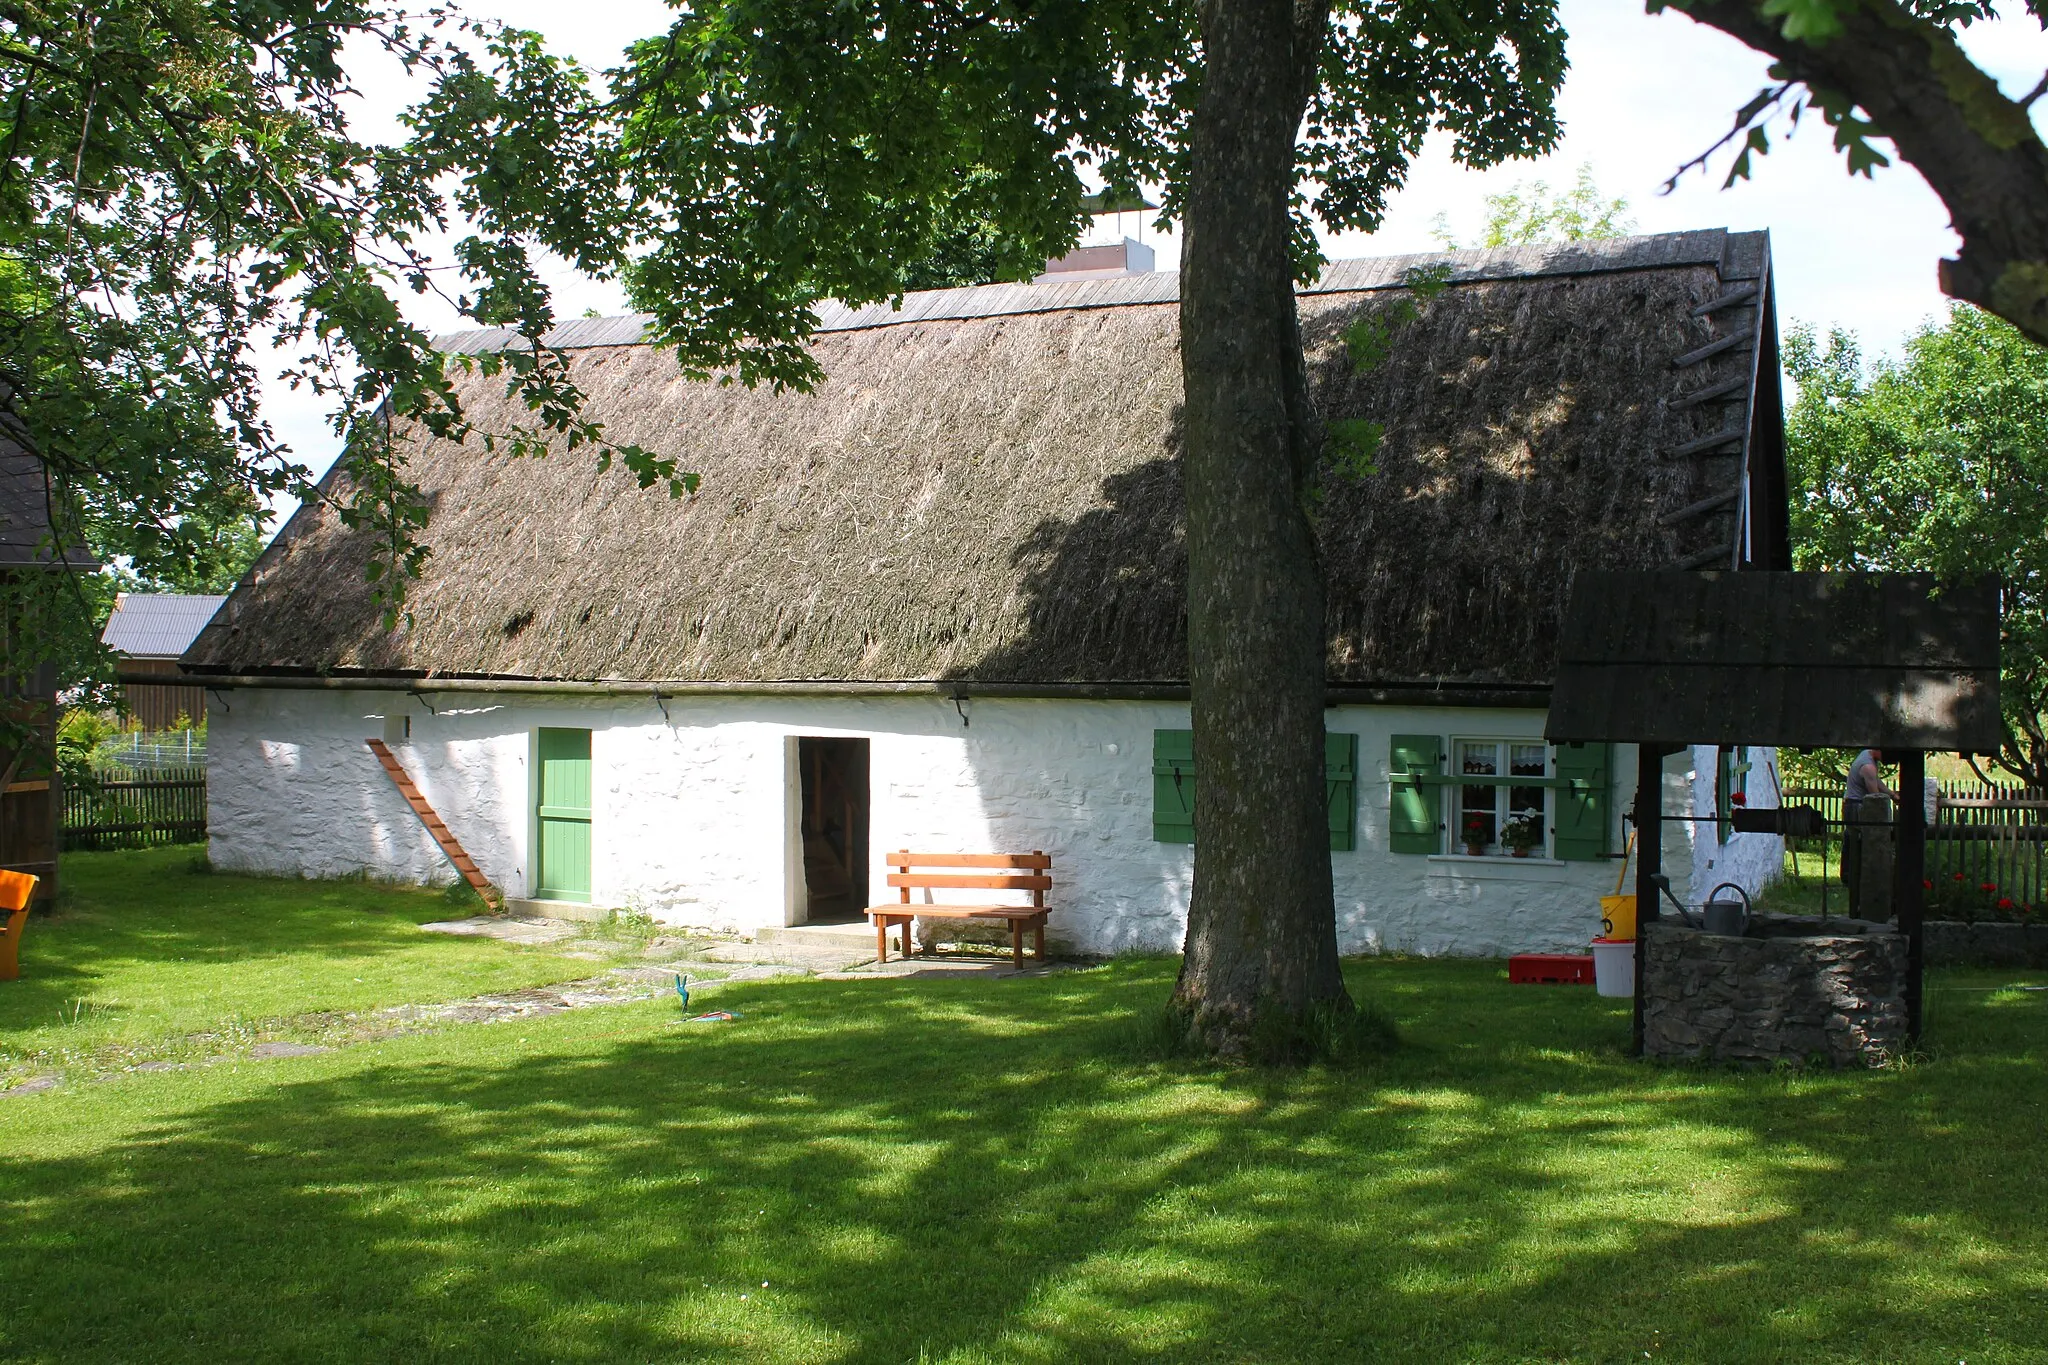 Photo showing: Das Weberhaus, Neudorf 27, Schauenstein, Wohnstallhaus mit Satteldach, Ende des 18. Jahrhunderts erbaut, ist heute als Heimatmuseum eingerichtet, Baudenkmal D-4-75-165-21